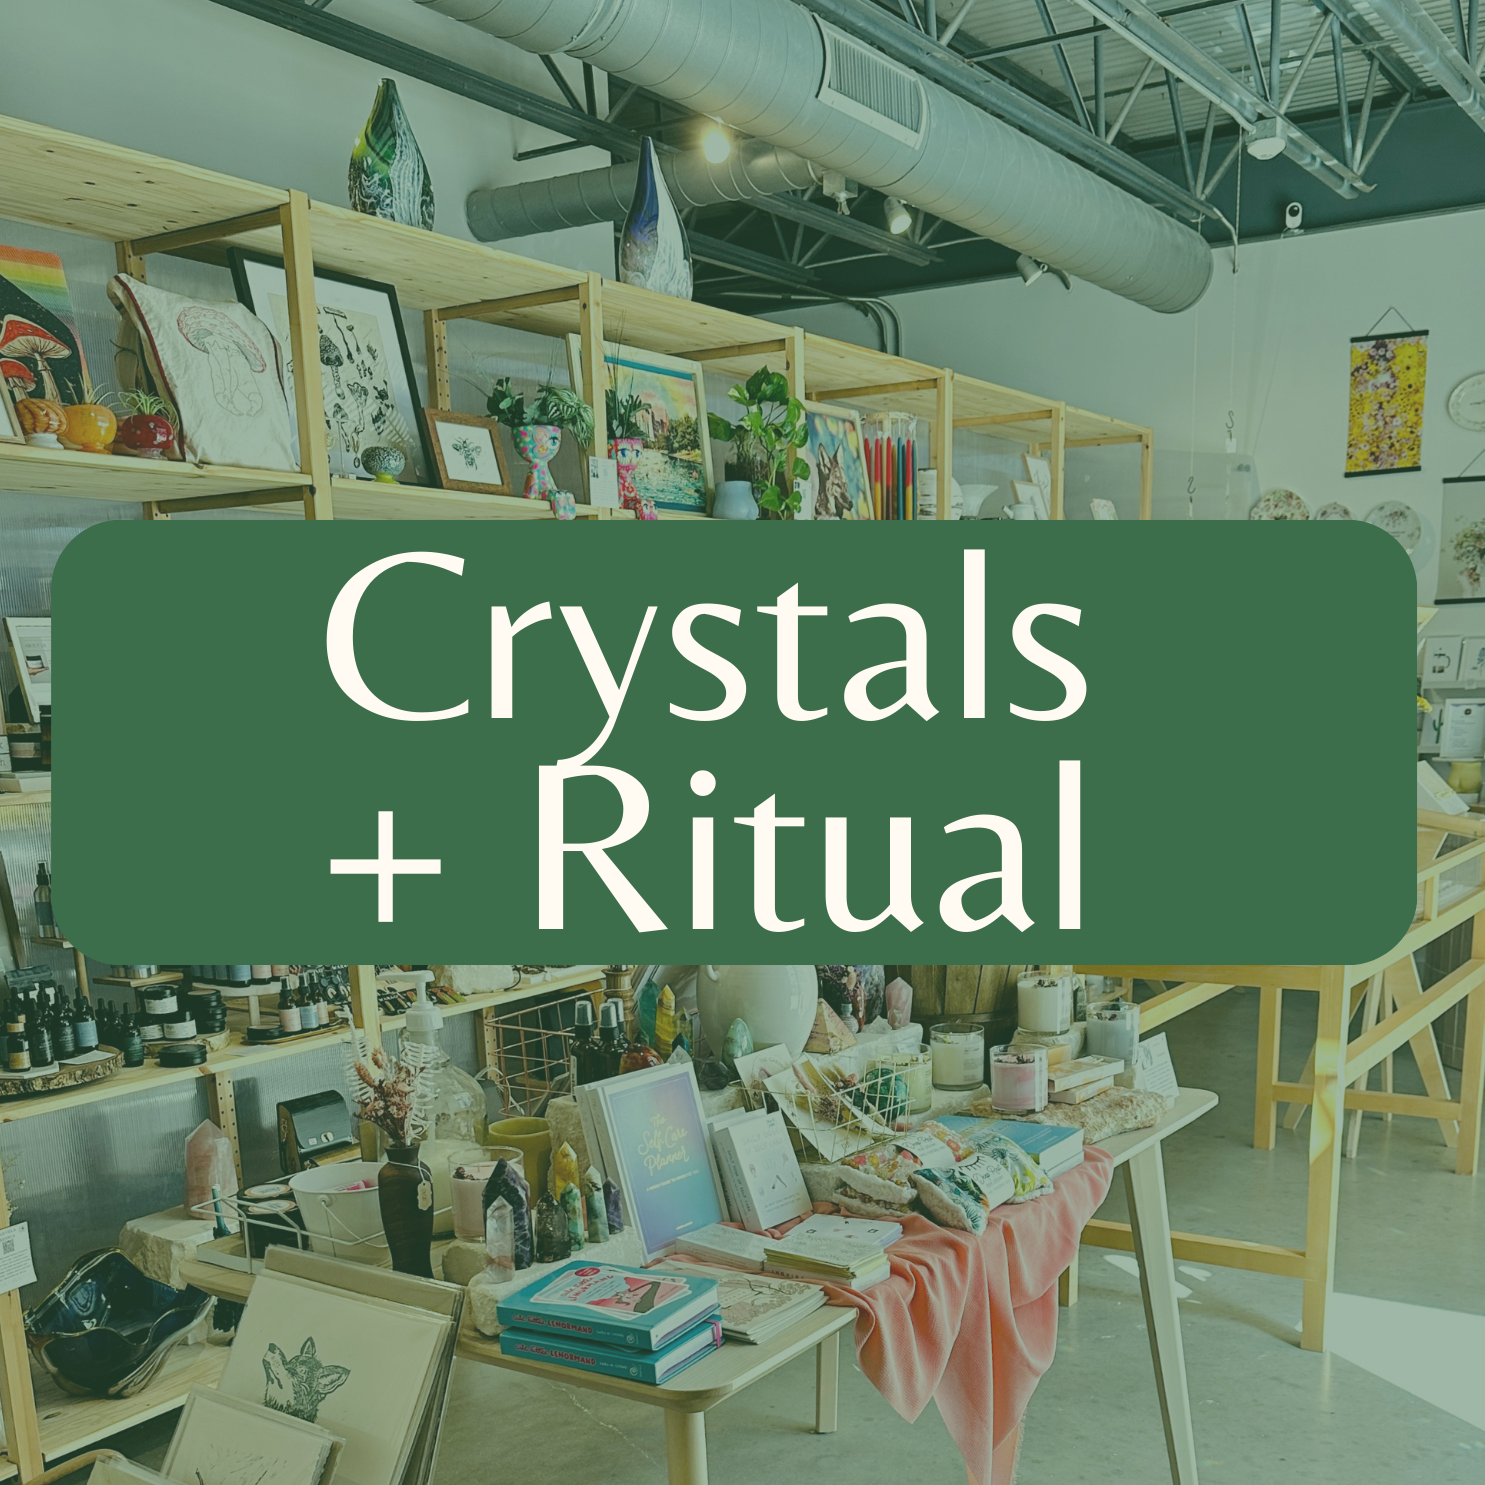 Crystals + Ritual